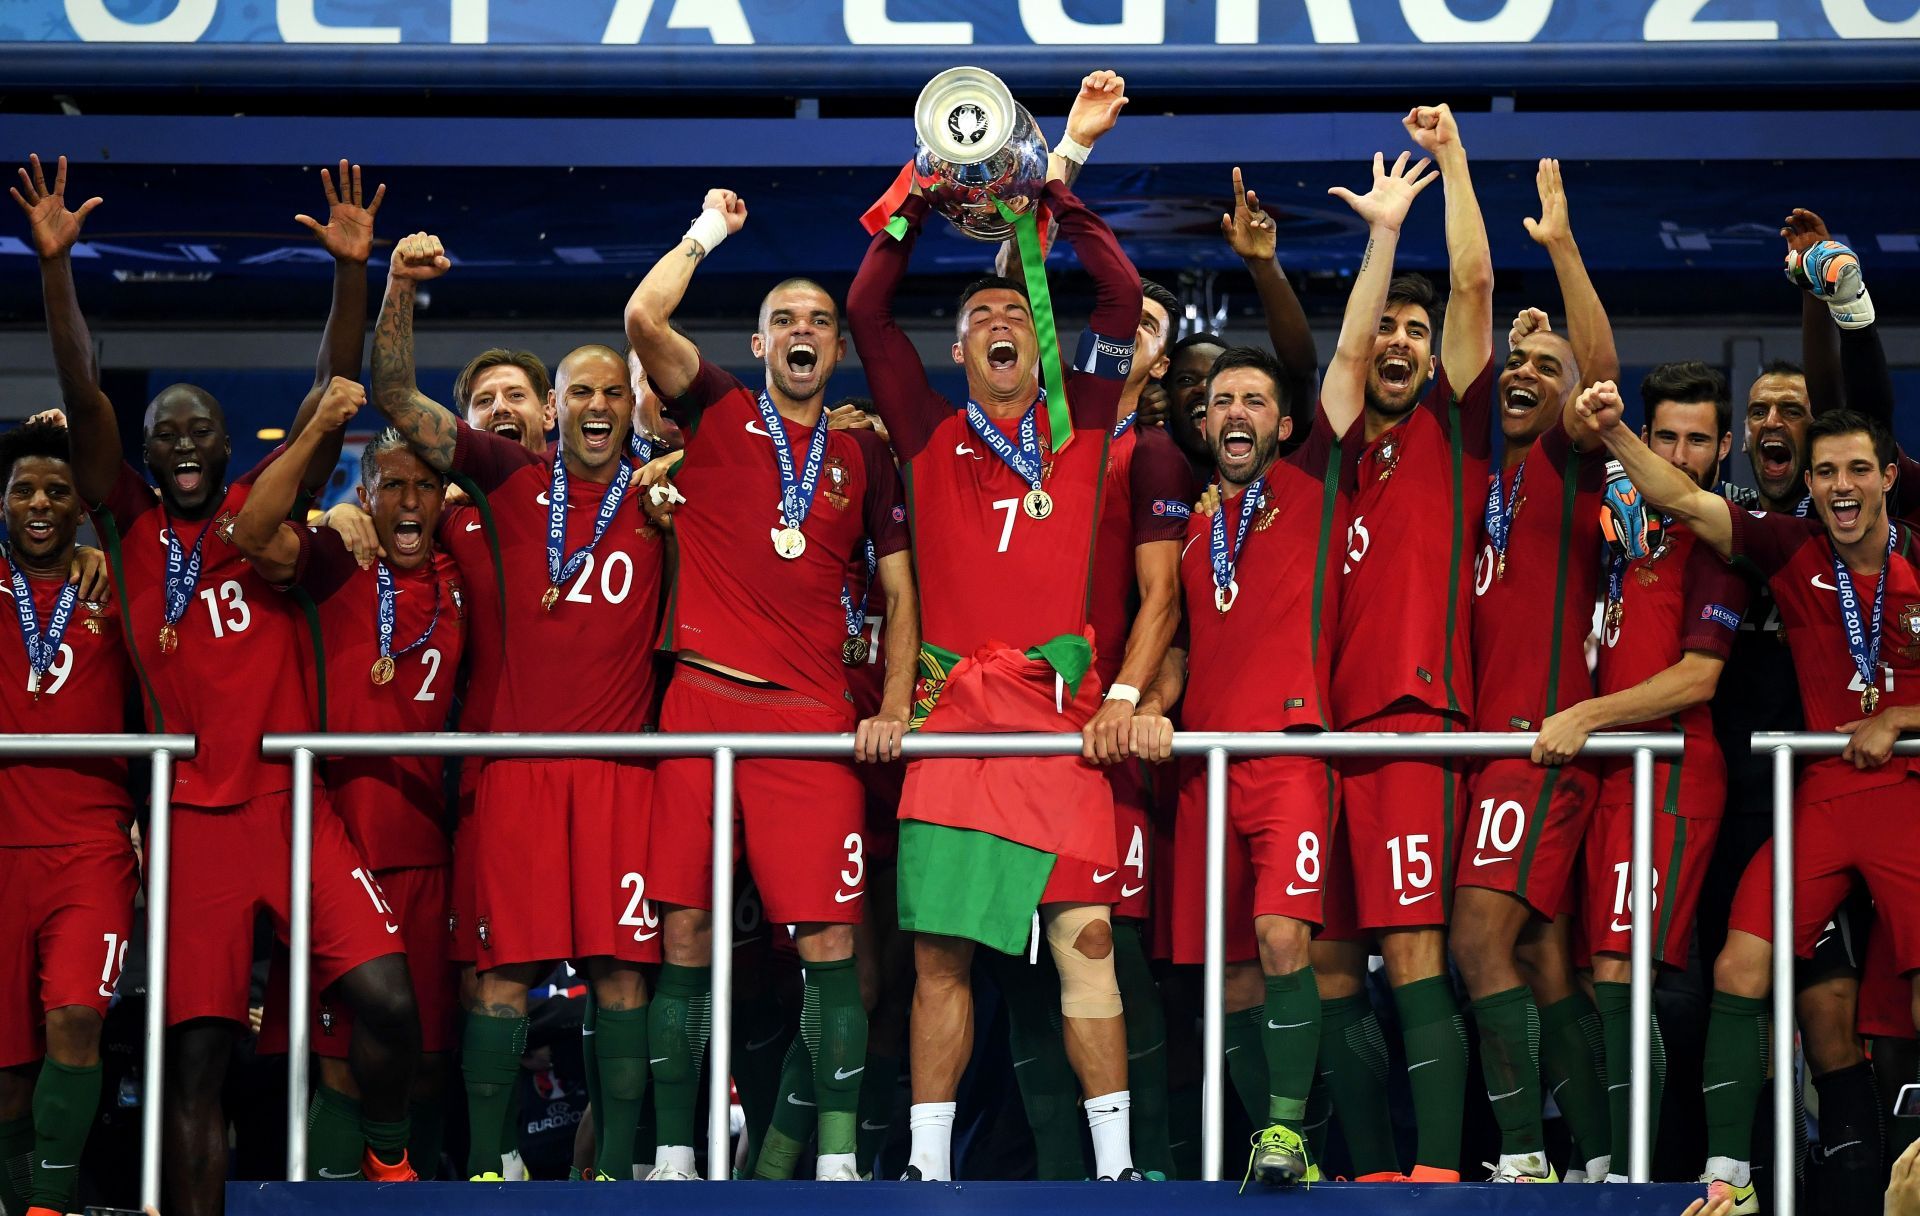 Portugal v France - Final: UEFA Euro 2016 Portuguese Captain Cristiano Ronaldo and his team lifting the UEFA Euro cup